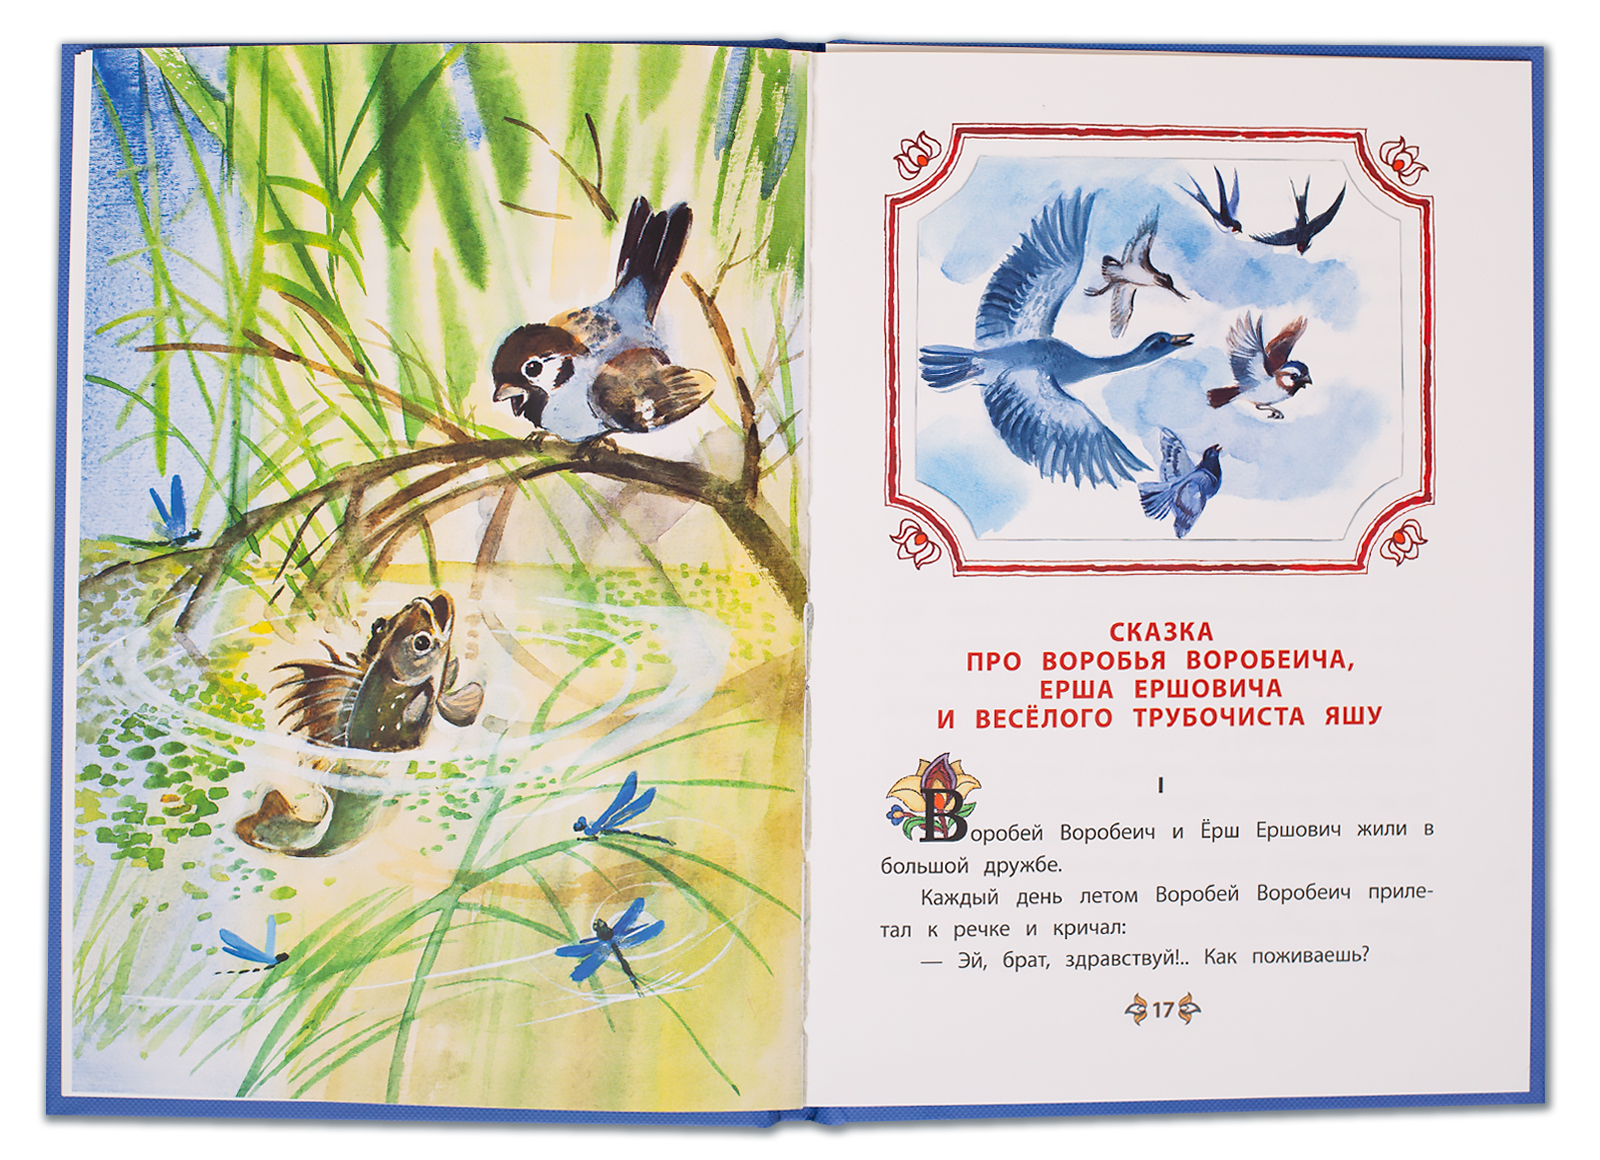 Краткое содержание аленушкины сказки мамина-сибиряка для читательского дневника, читать краткий пересказ онлайн